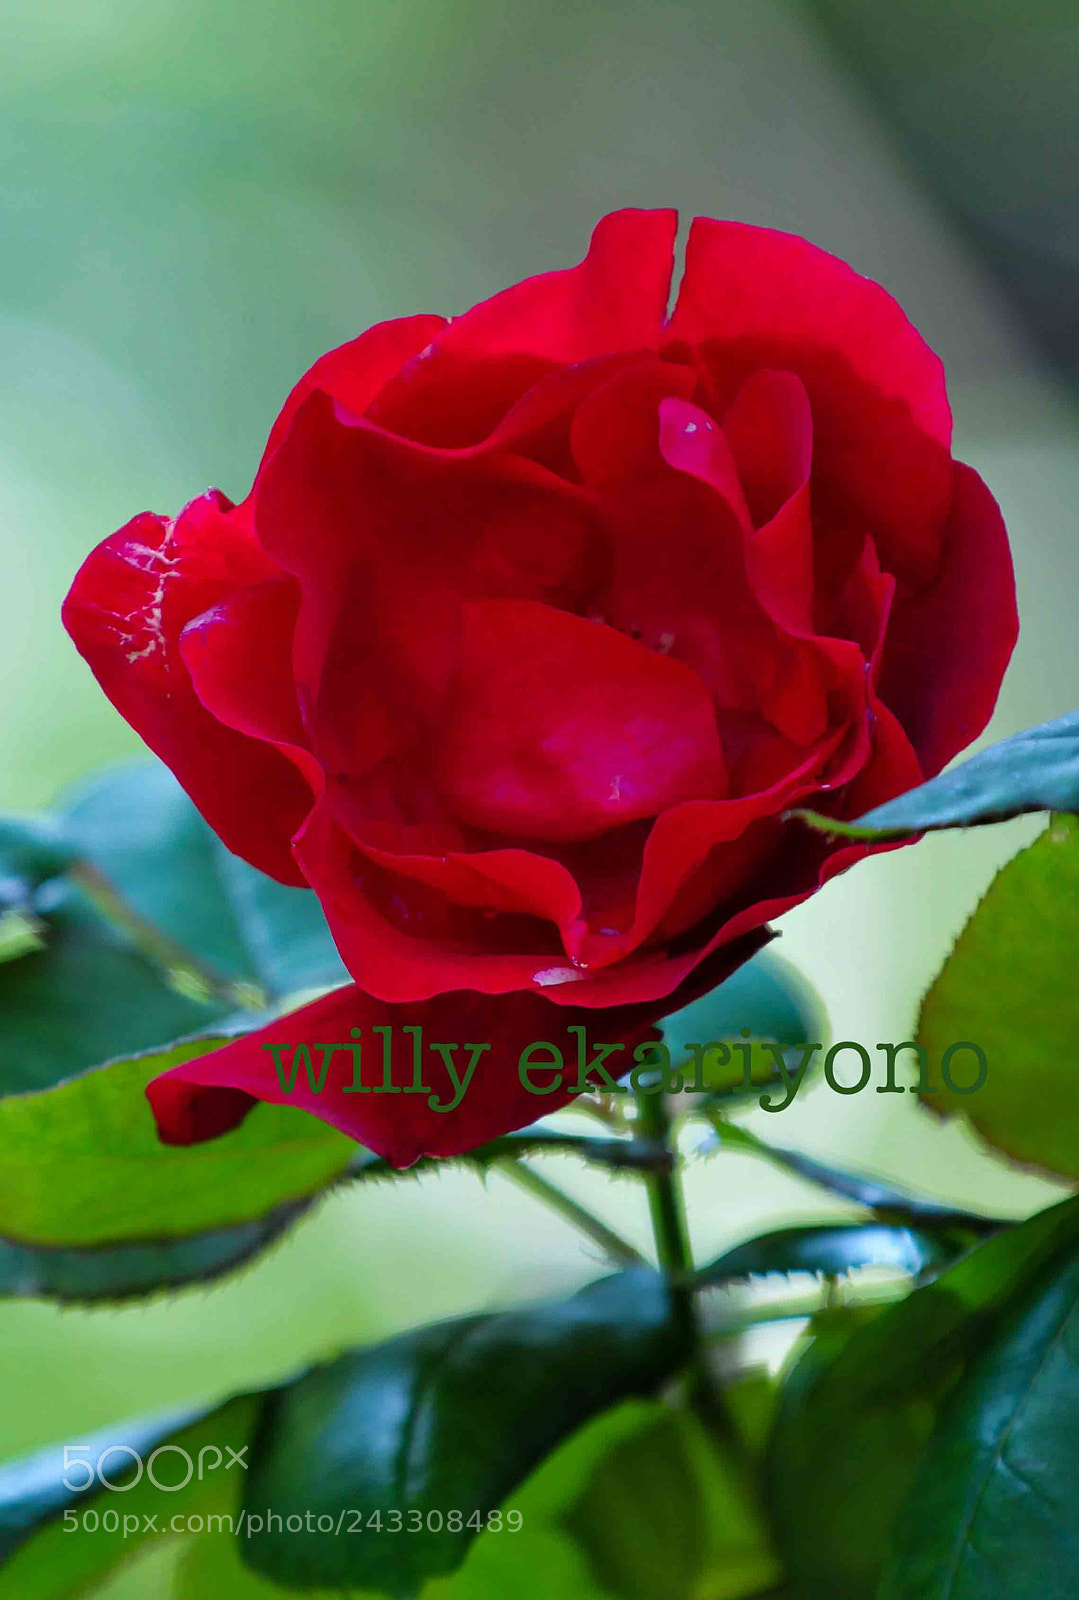 Nikon D300 sample photo. Bunga mawar merah ku photography